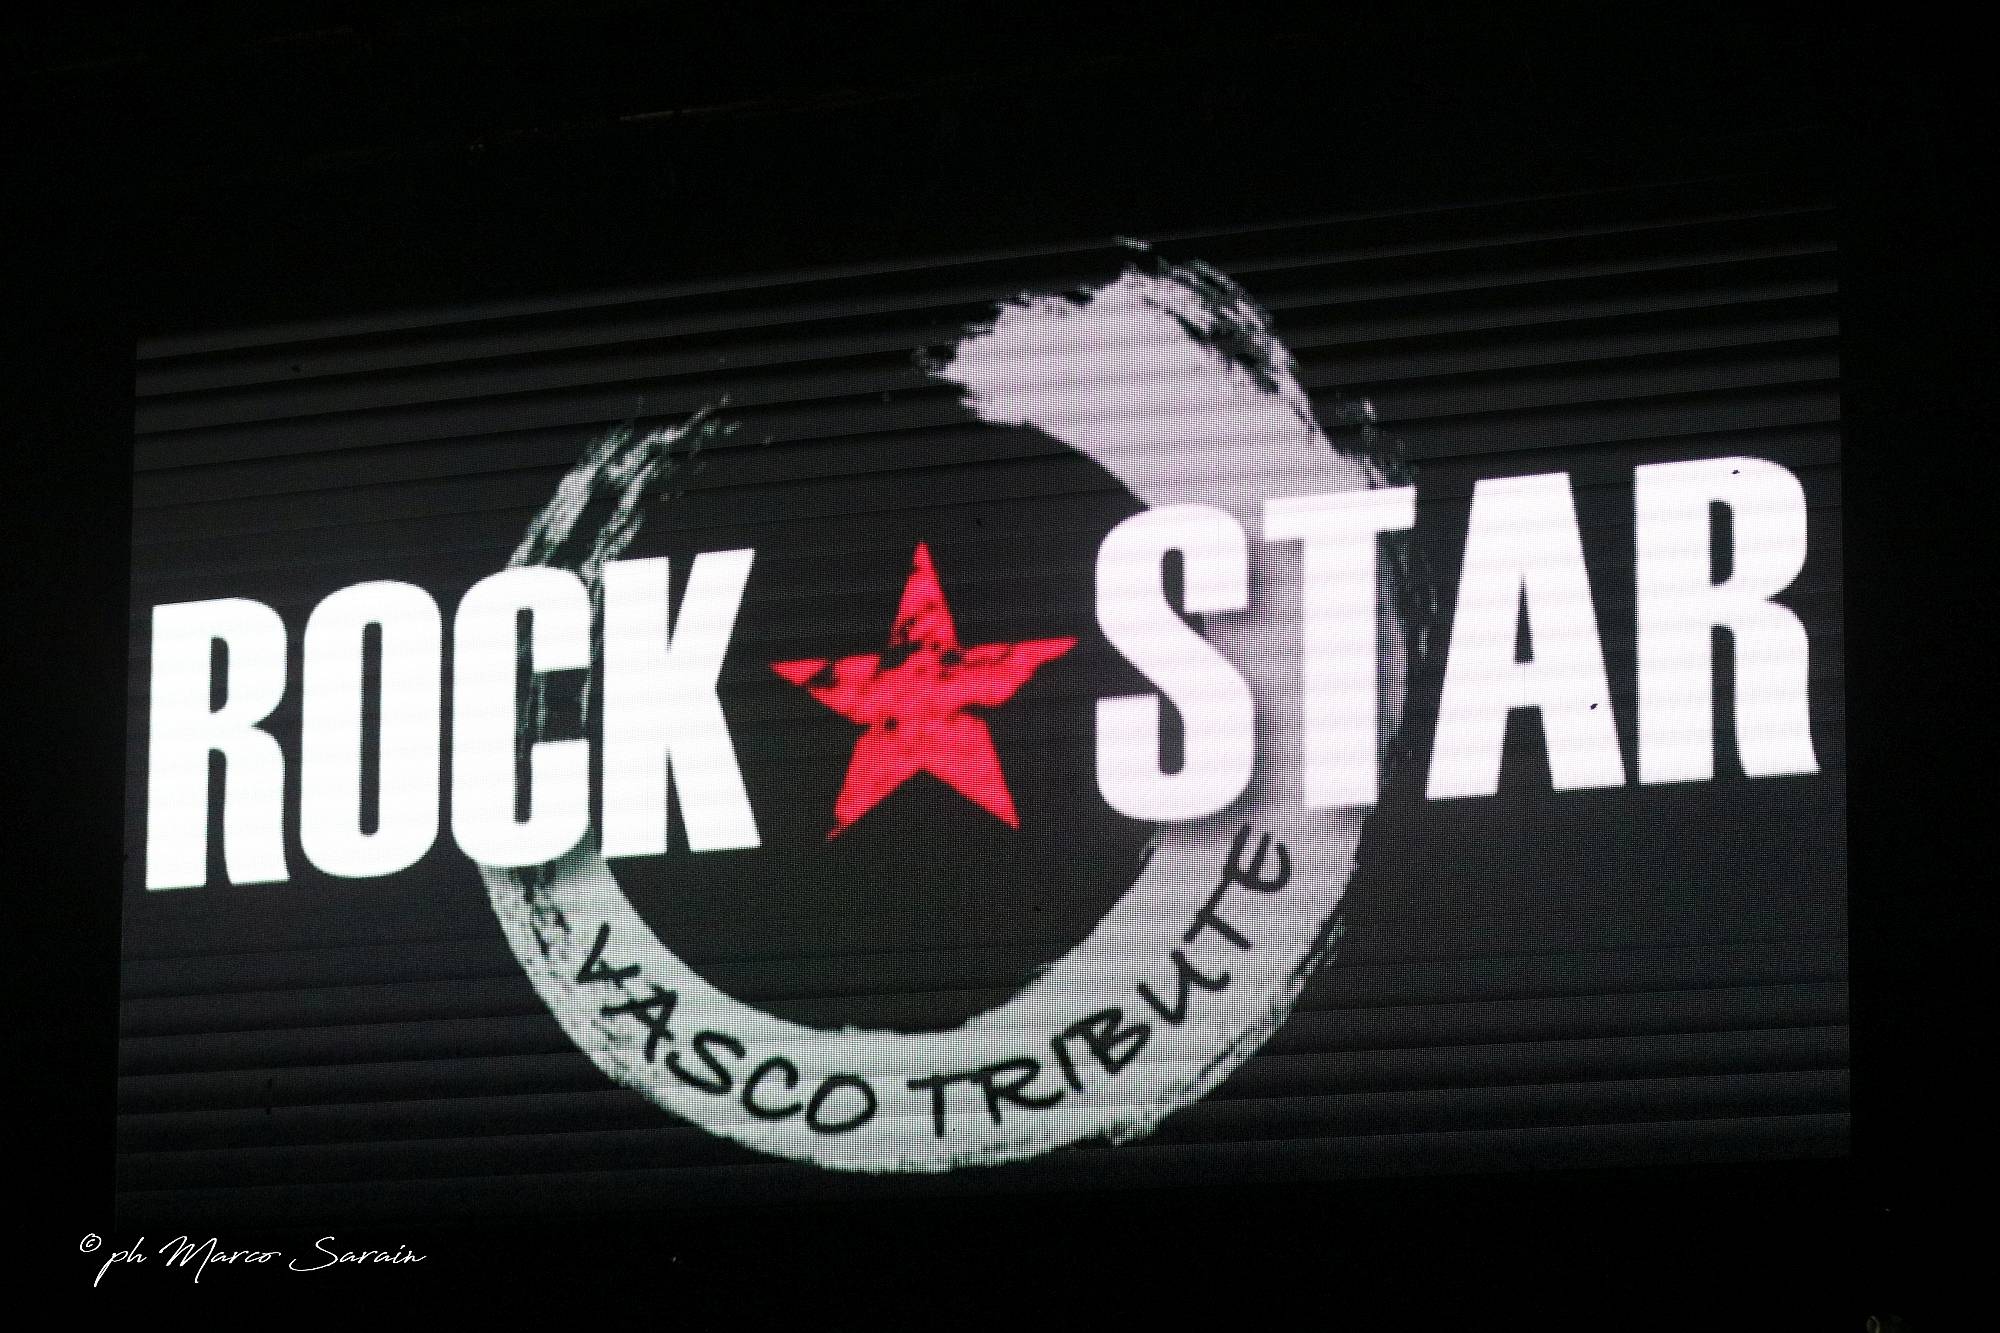 ROCK STAR - Andrea Braido - Max Allarme live @ VigoRock